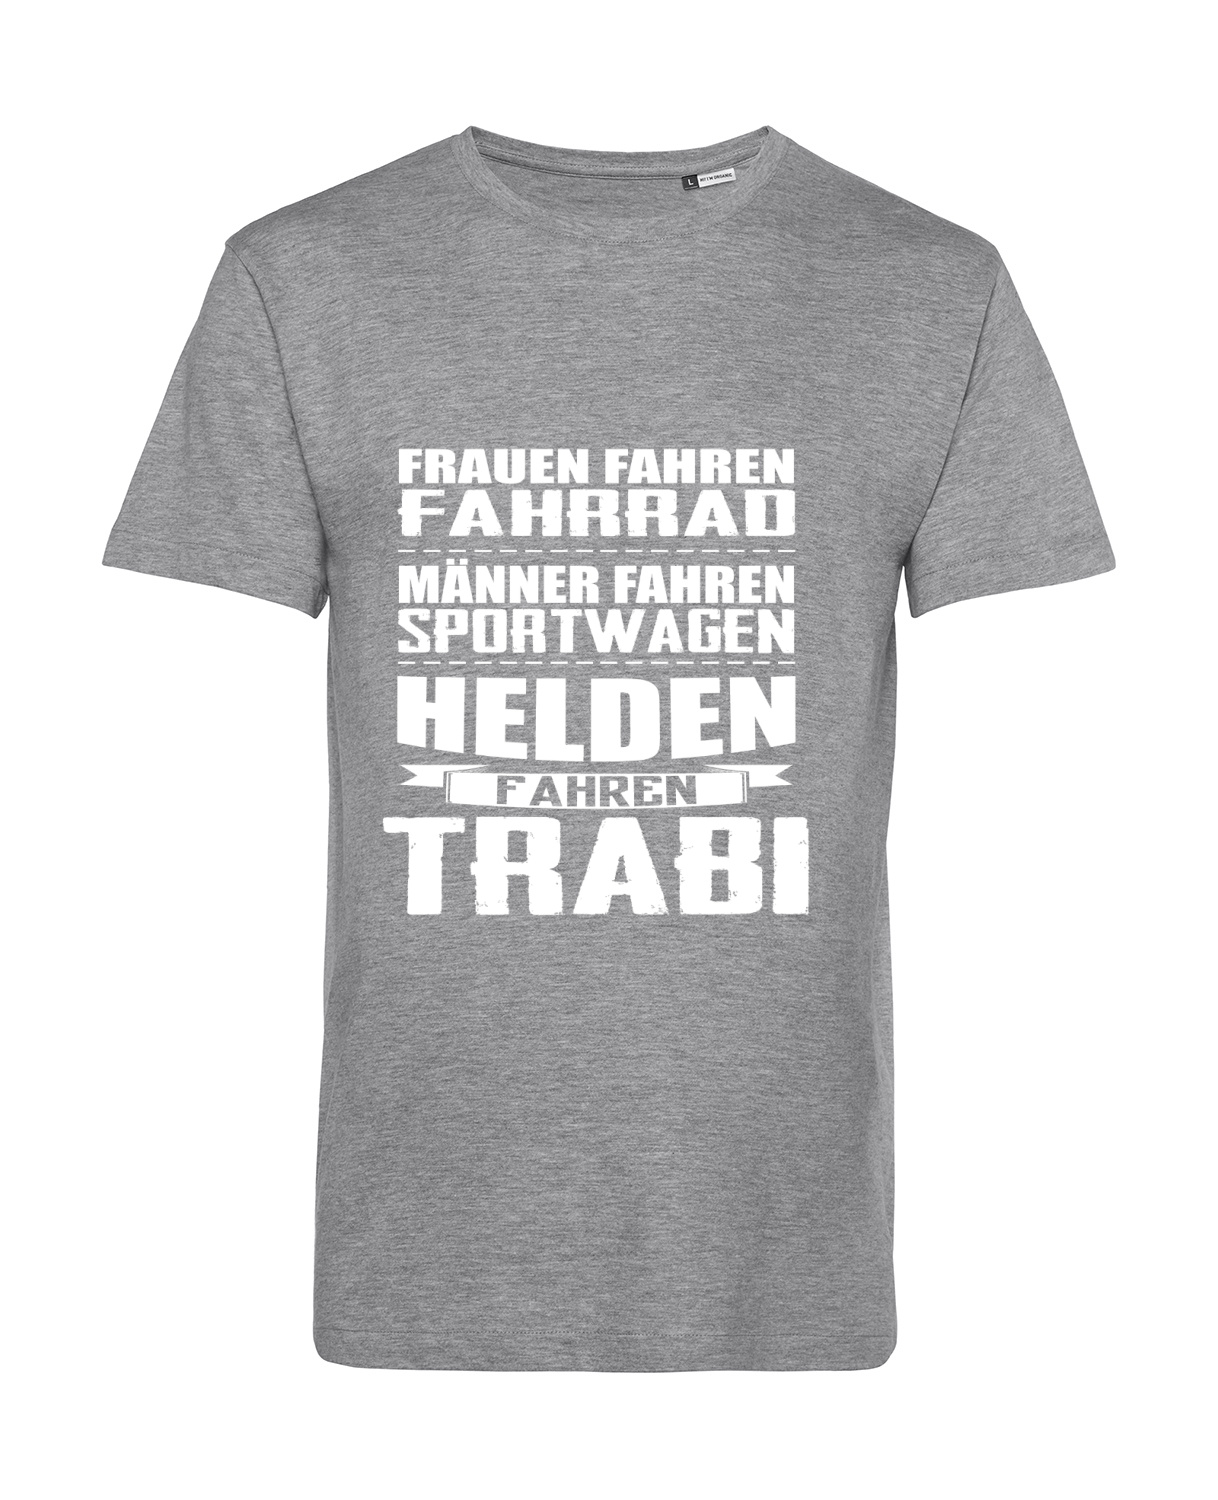 Nachhaltiges T-Shirt Herren 2Takter - Helden fahren Trabi